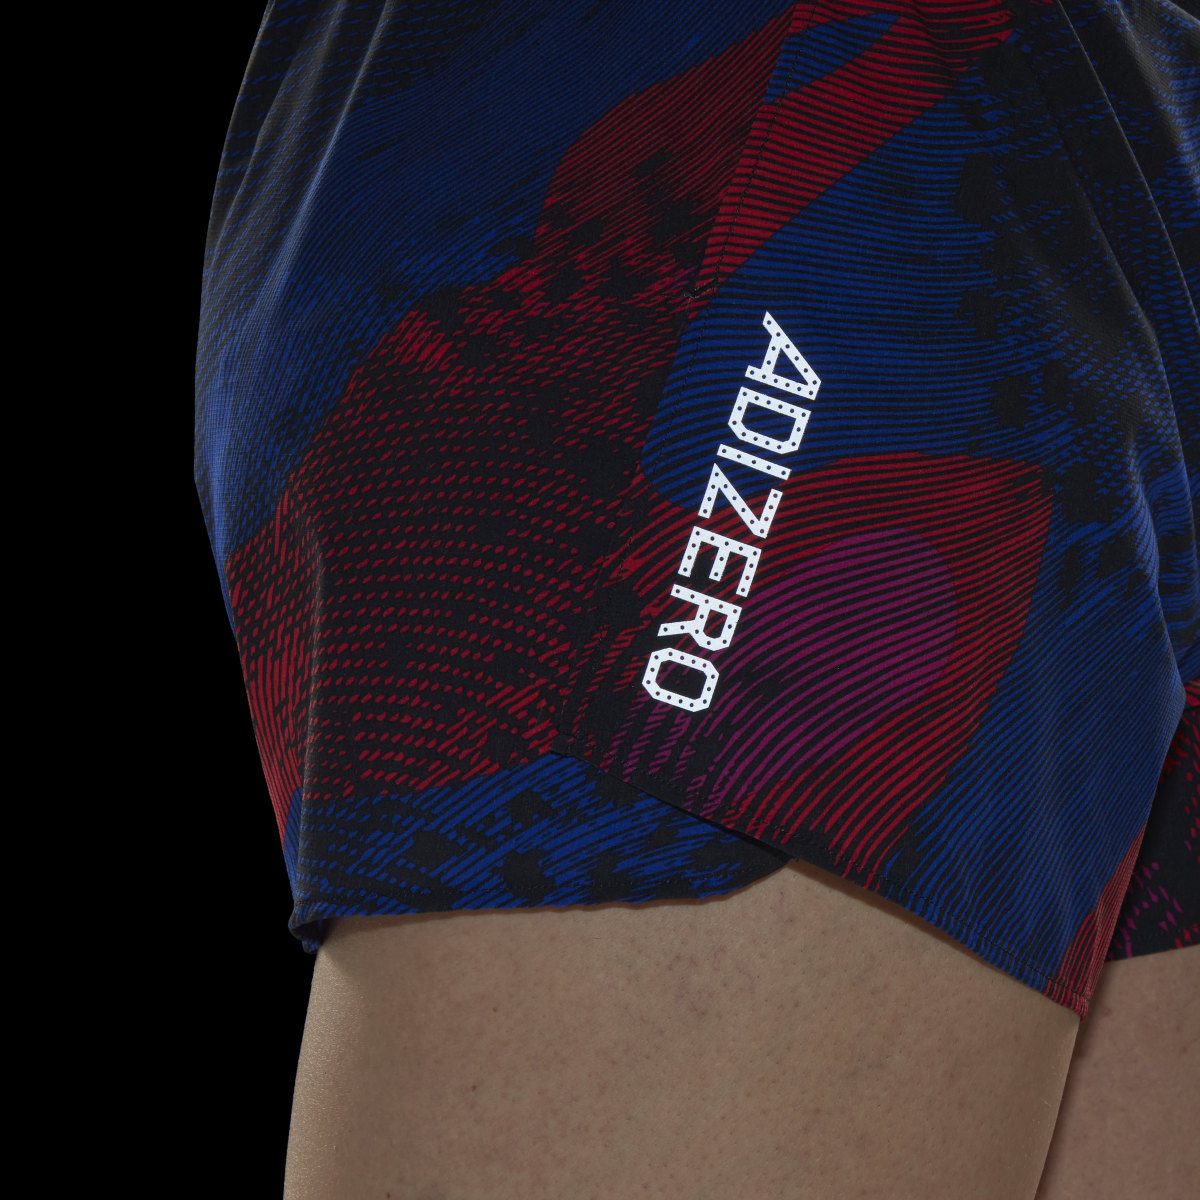 Adidas Adizero Split Shorts. 7